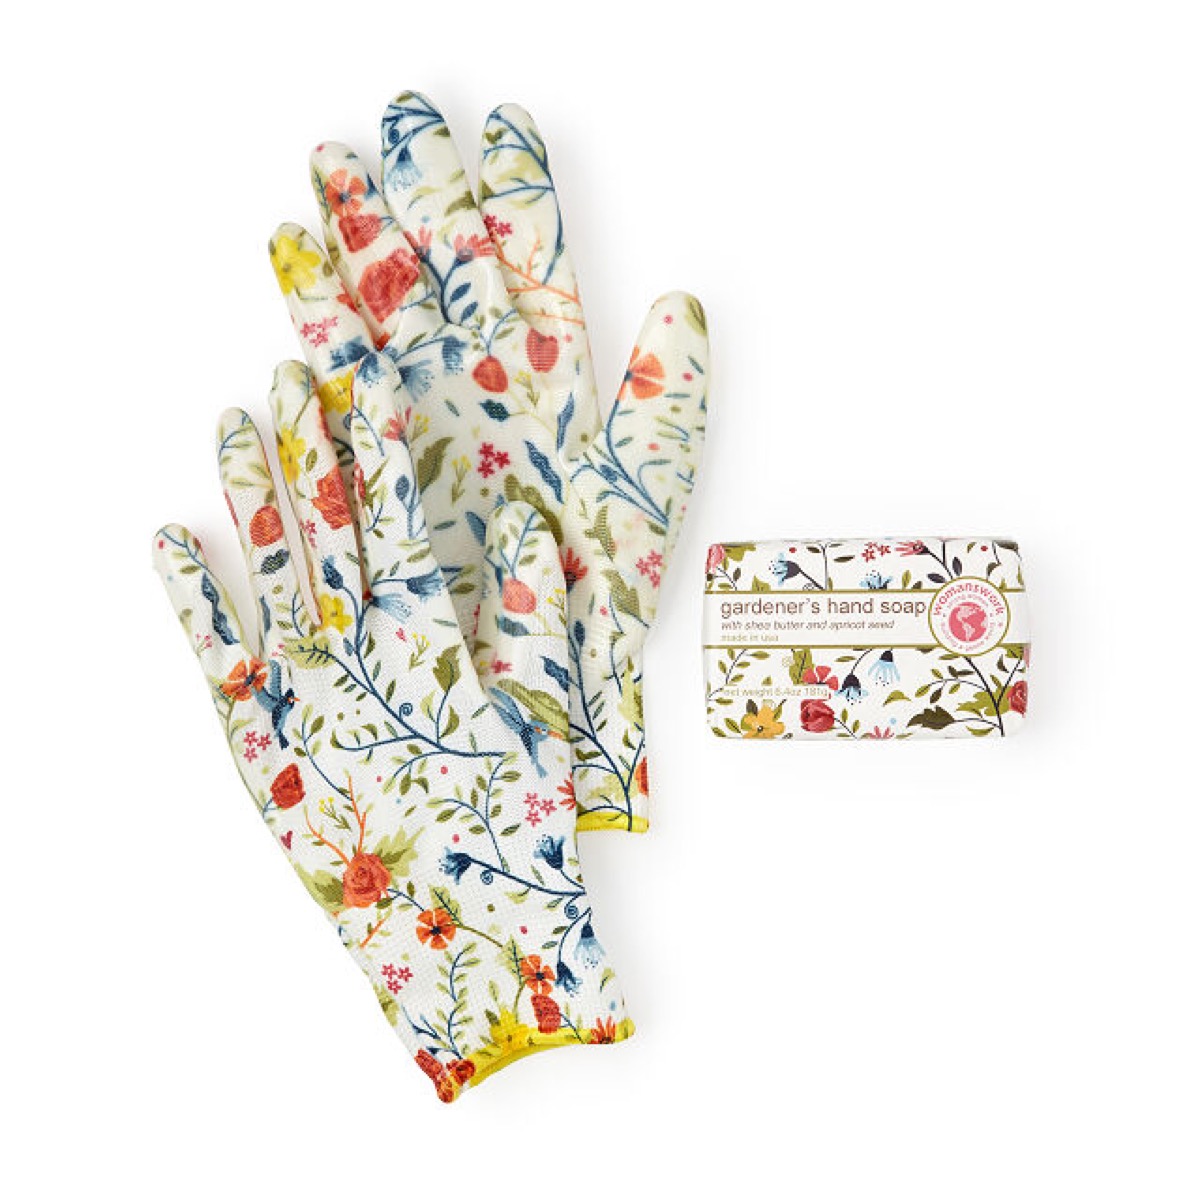 Floral garden gloves